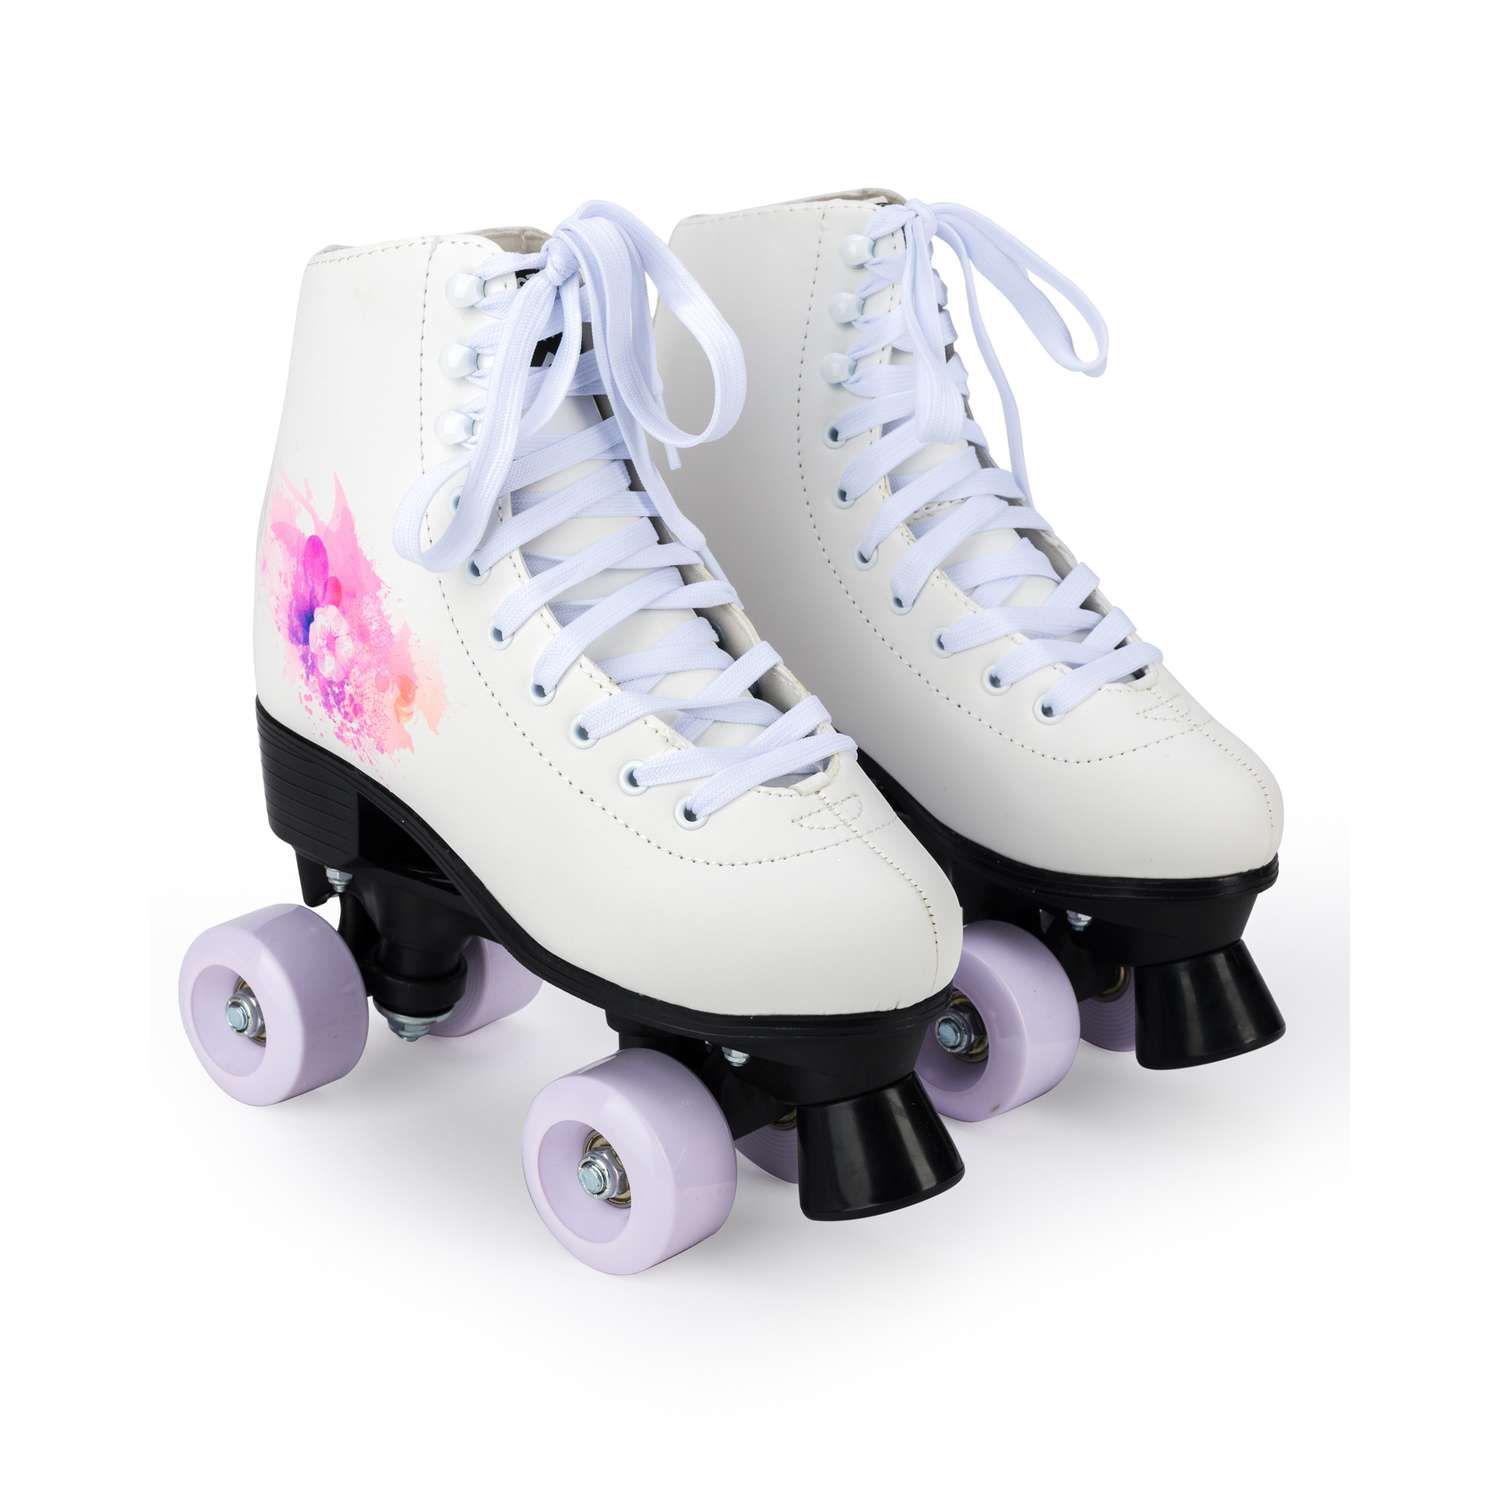 Роликовые коньки SXRide Roller skate YXSKT04WPUR40 белые с фиолетово-розовым орнаментом размер 40 - фото 1